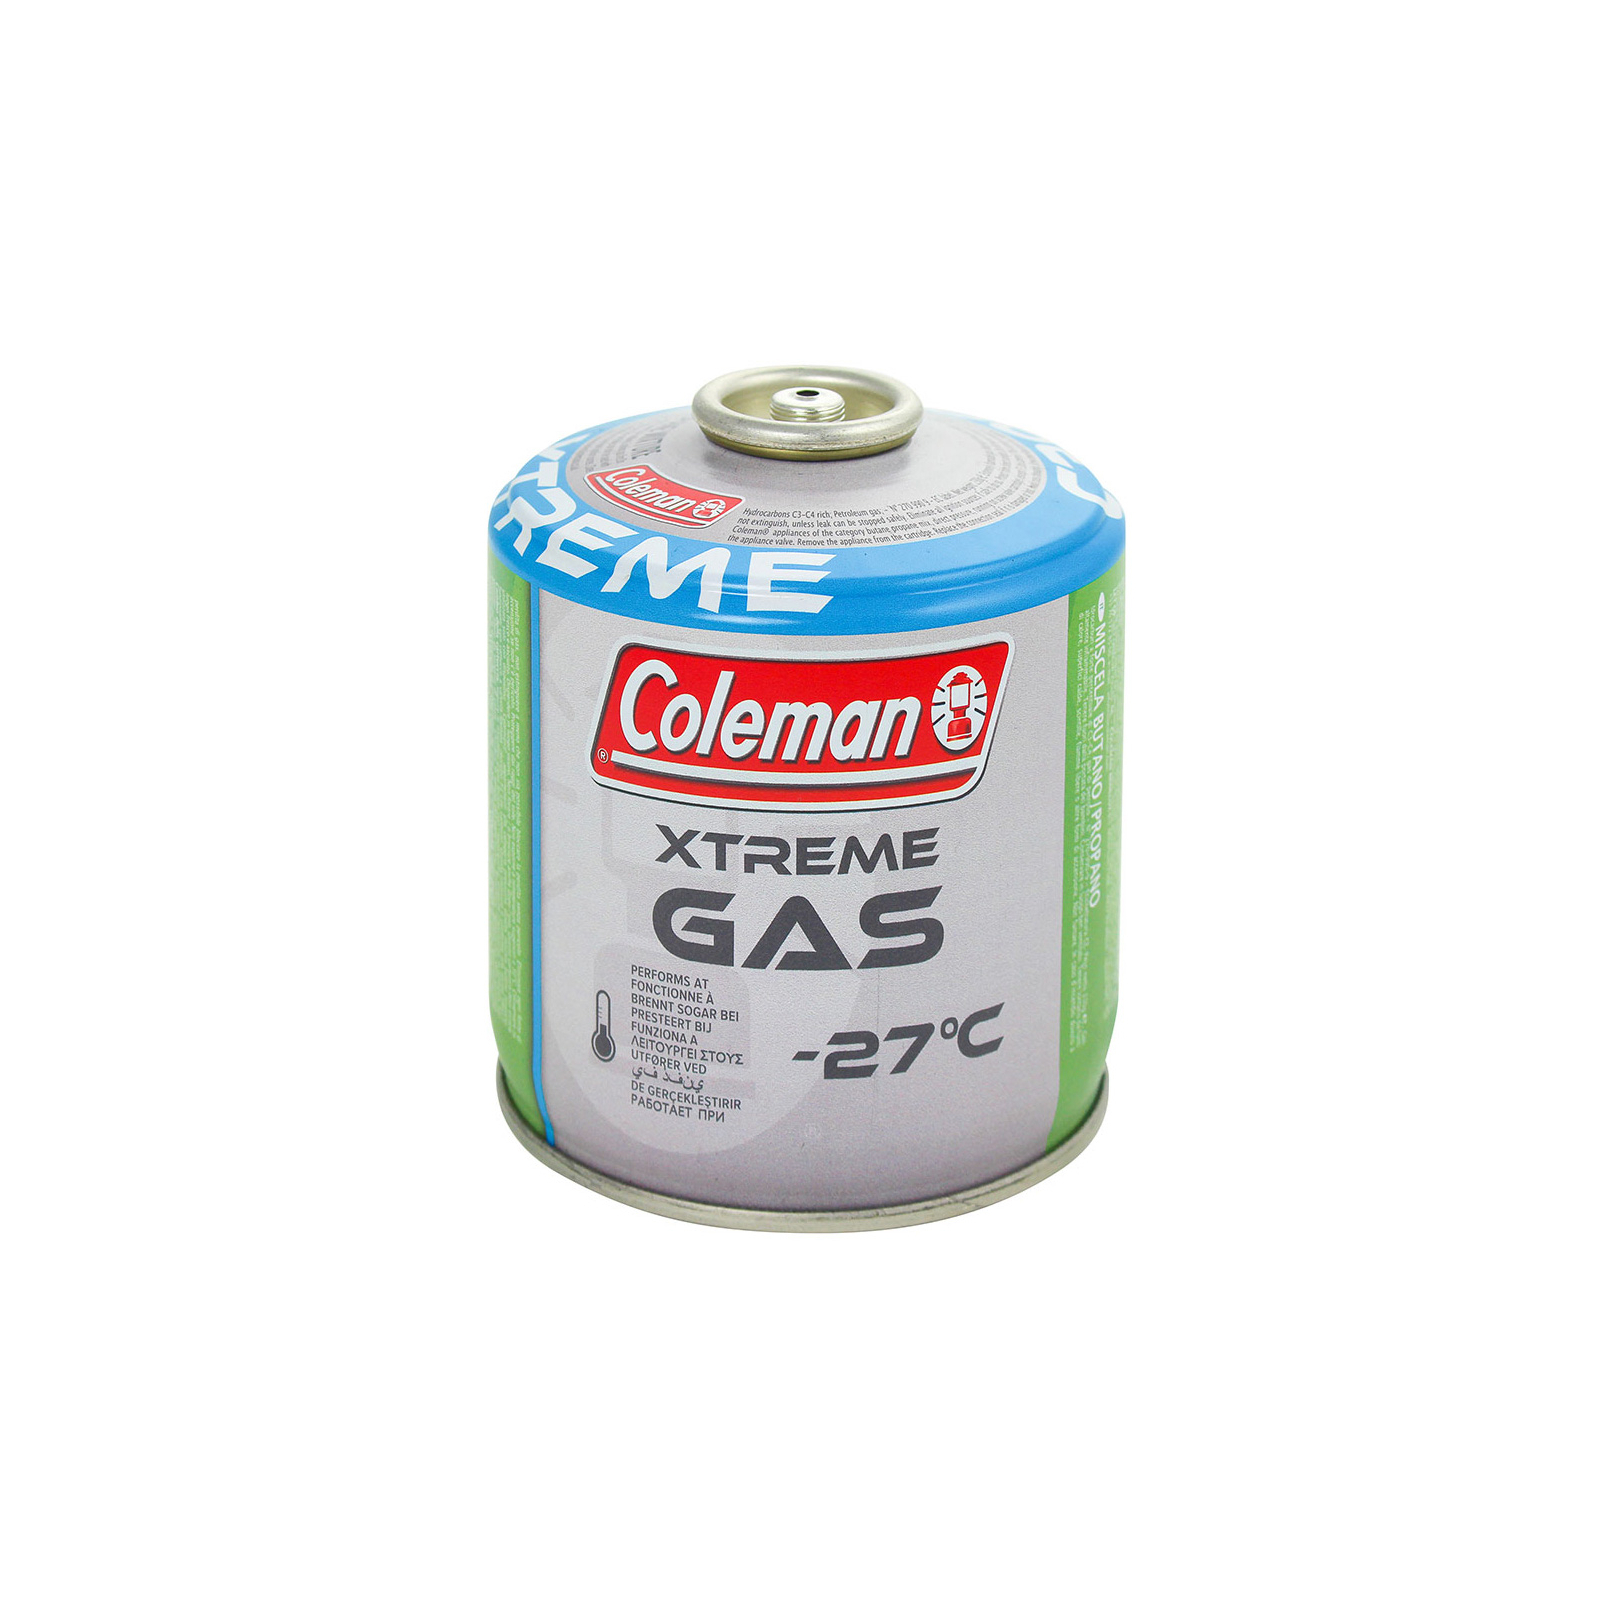 Газовый баллон Coleman C300 Xtreme Gas (-27 C) (3000004537)